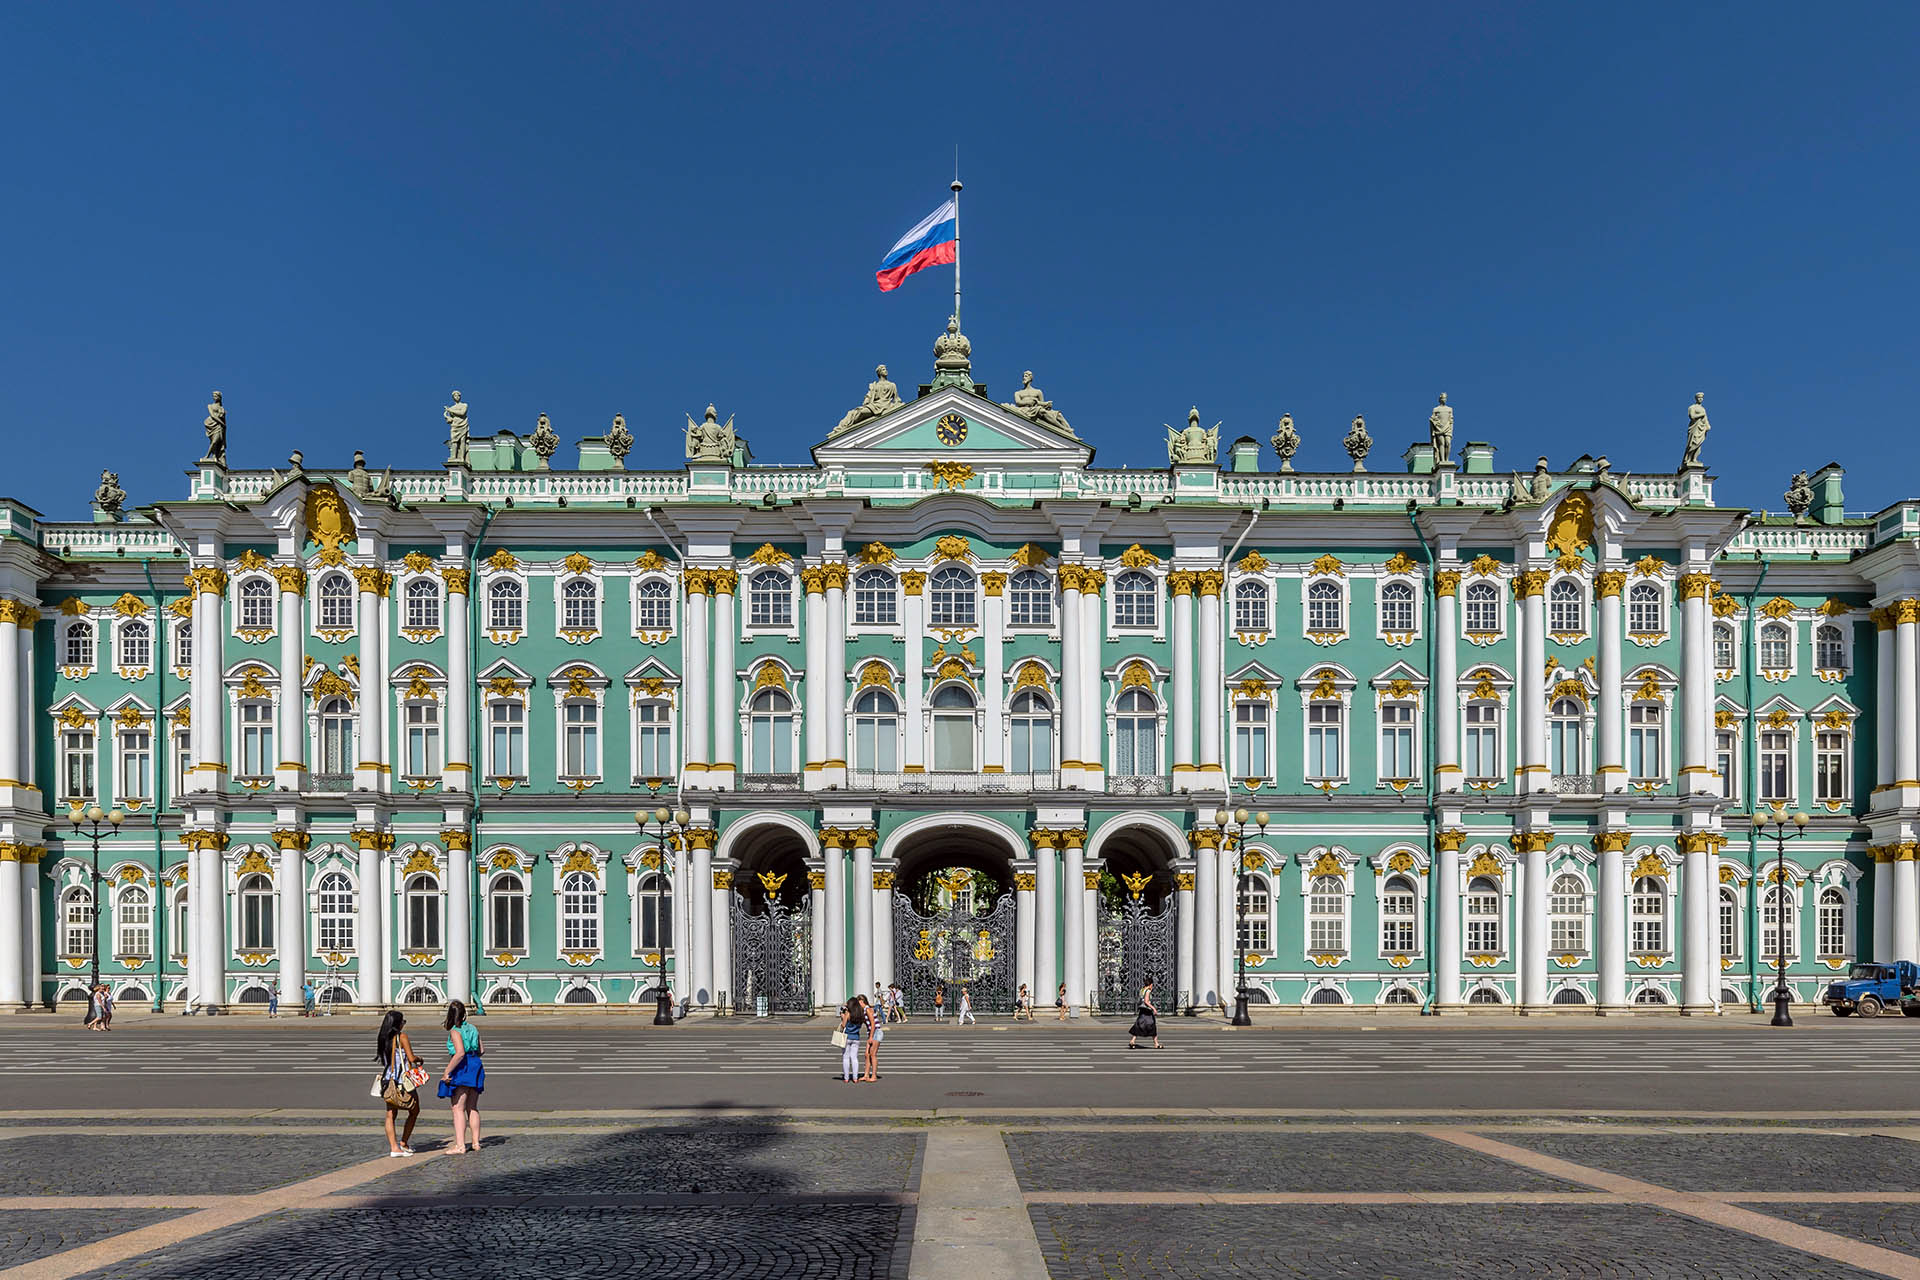 Центральная часть южного фасада Зимнего дворца в Санкт-Петербурге